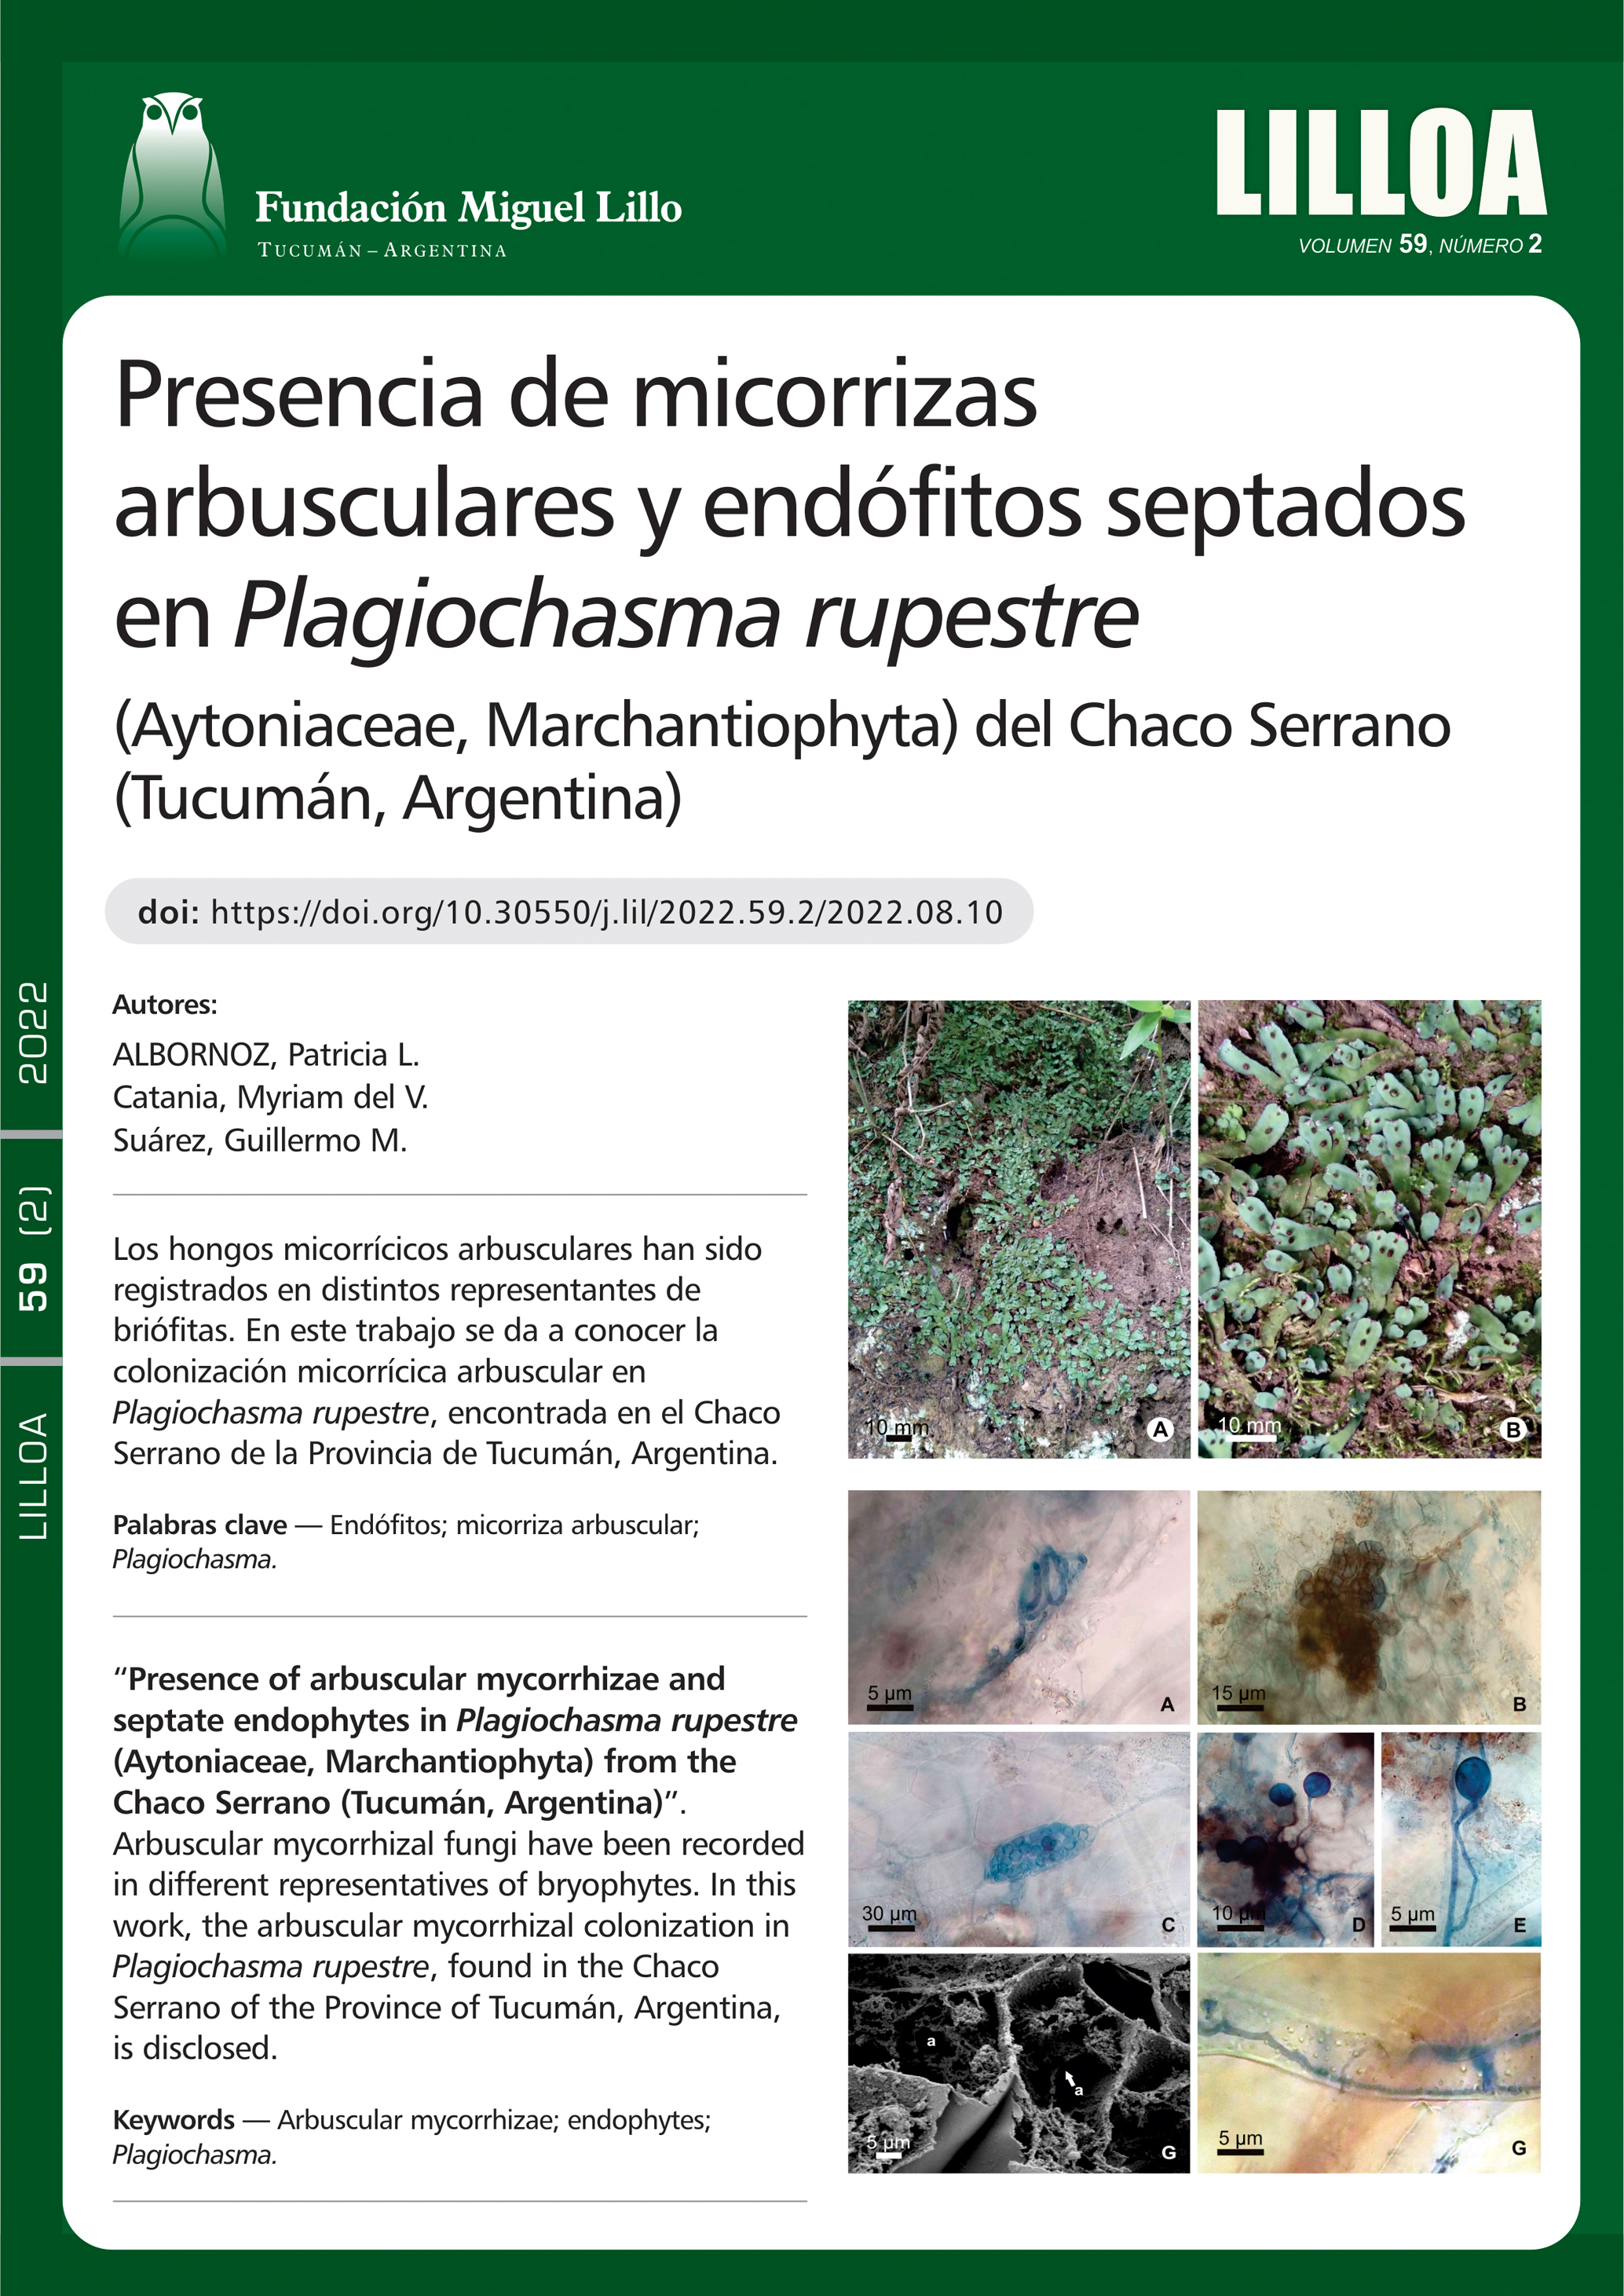 Presencia de micorrizas arbusculares y endófitos septados en Plagiochasma rupestre (Aytoniaceae, Marchantiophyta) del Chaco Serrano (Tucumán, Argentina)